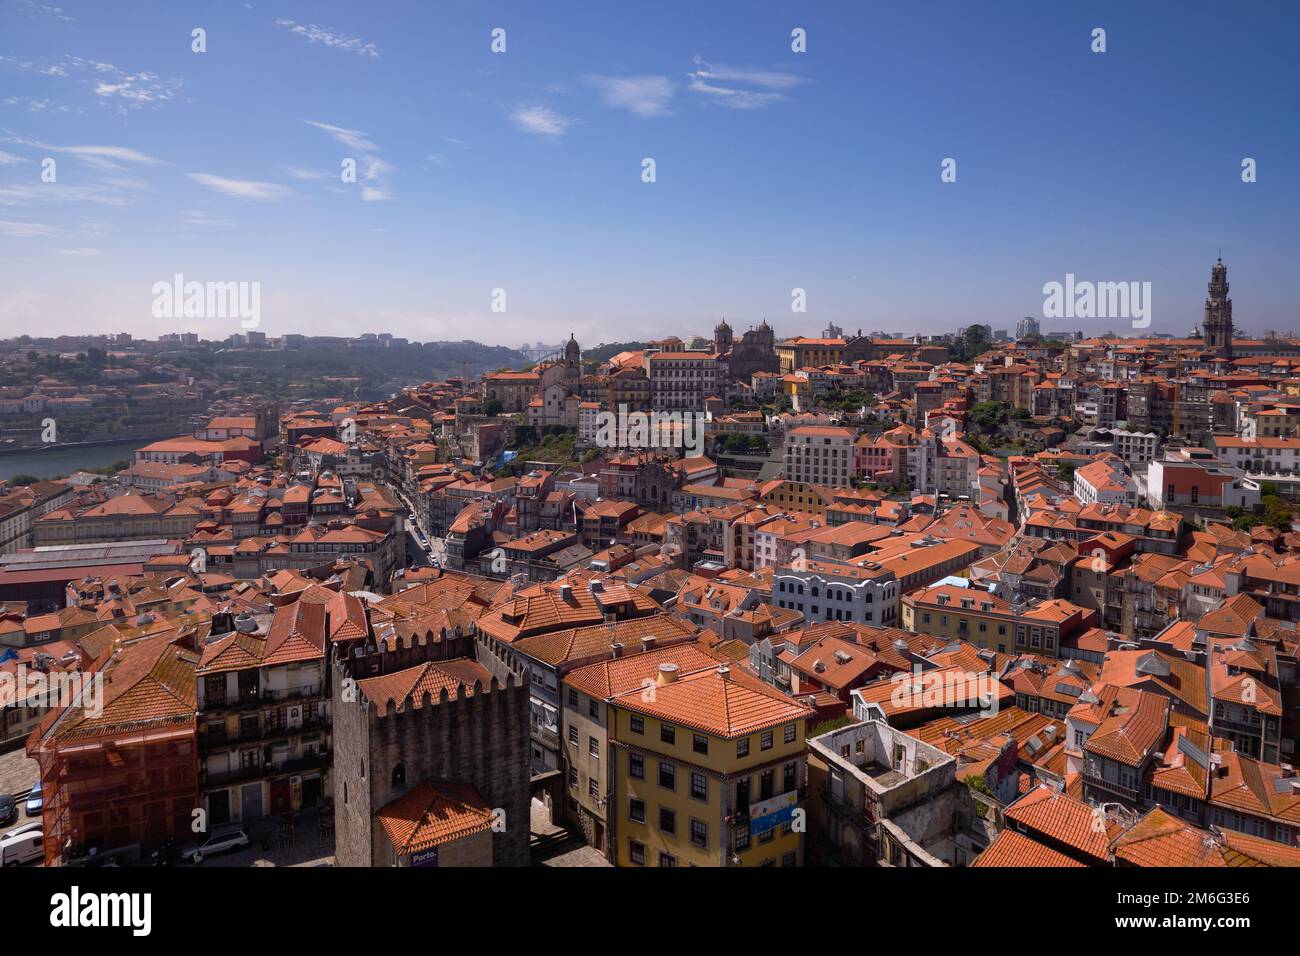 Vue panoramique aérienne de la ville avec le fleuve Douro depuis le sommet des Tours de la cathédrale catholique romaine Sé de Porto - Por Banque D'Images